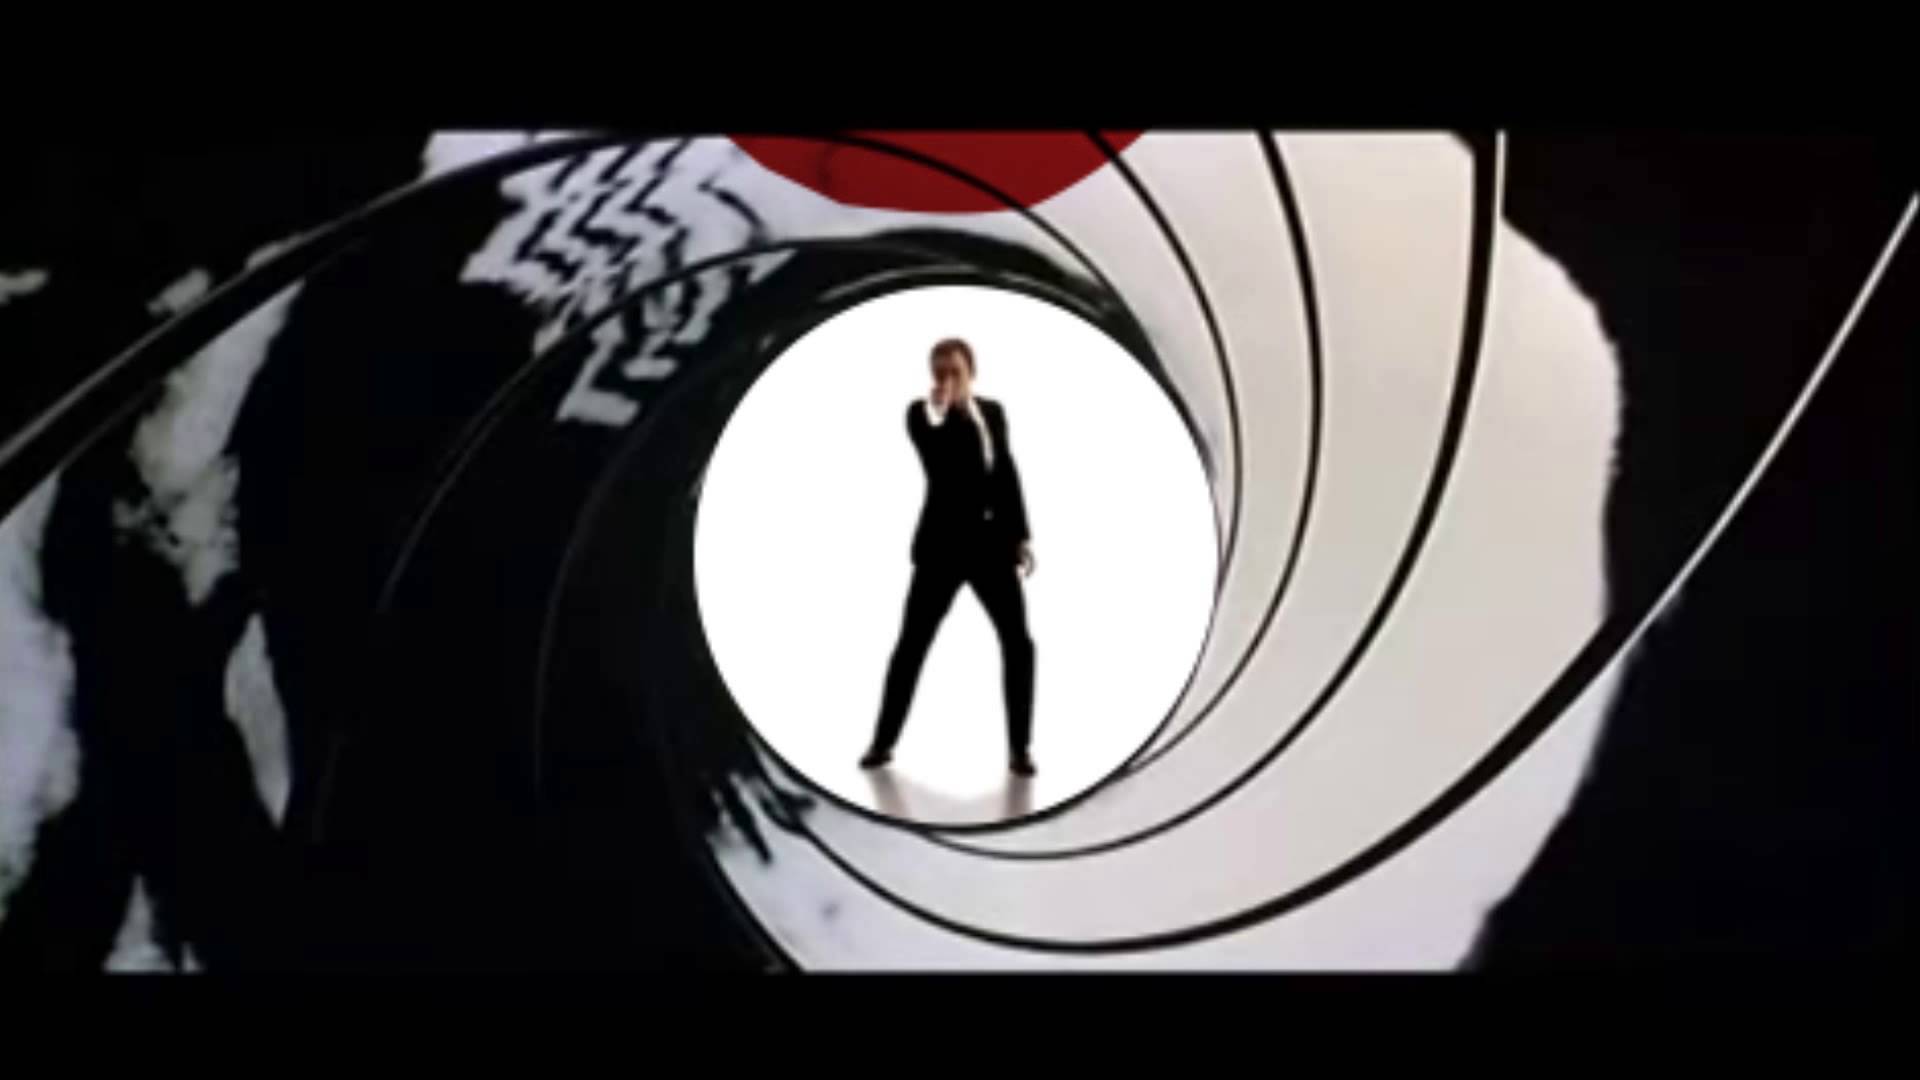 James Bond Gun Barrel Wallpaper - WallpaperSafari